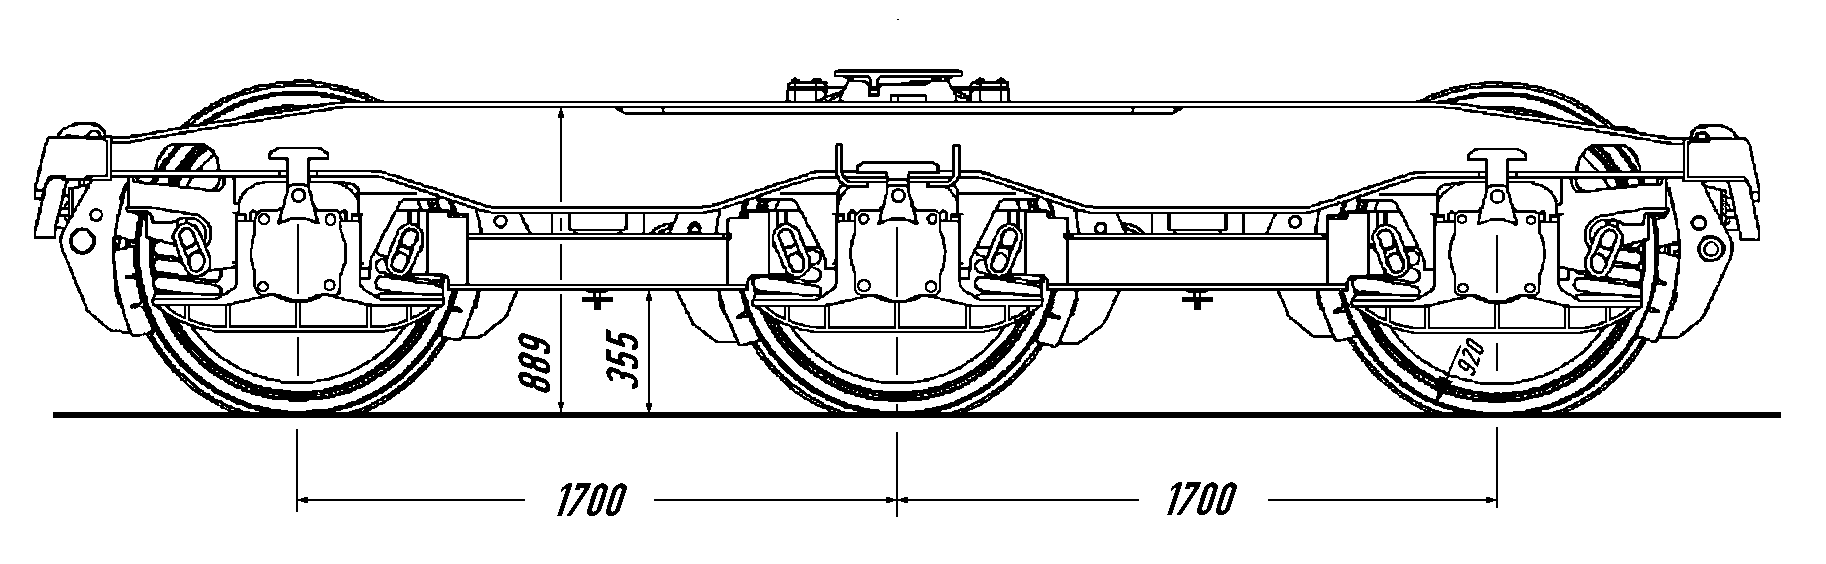 Drehgestell ELH 3-25s(s), Zeichnung